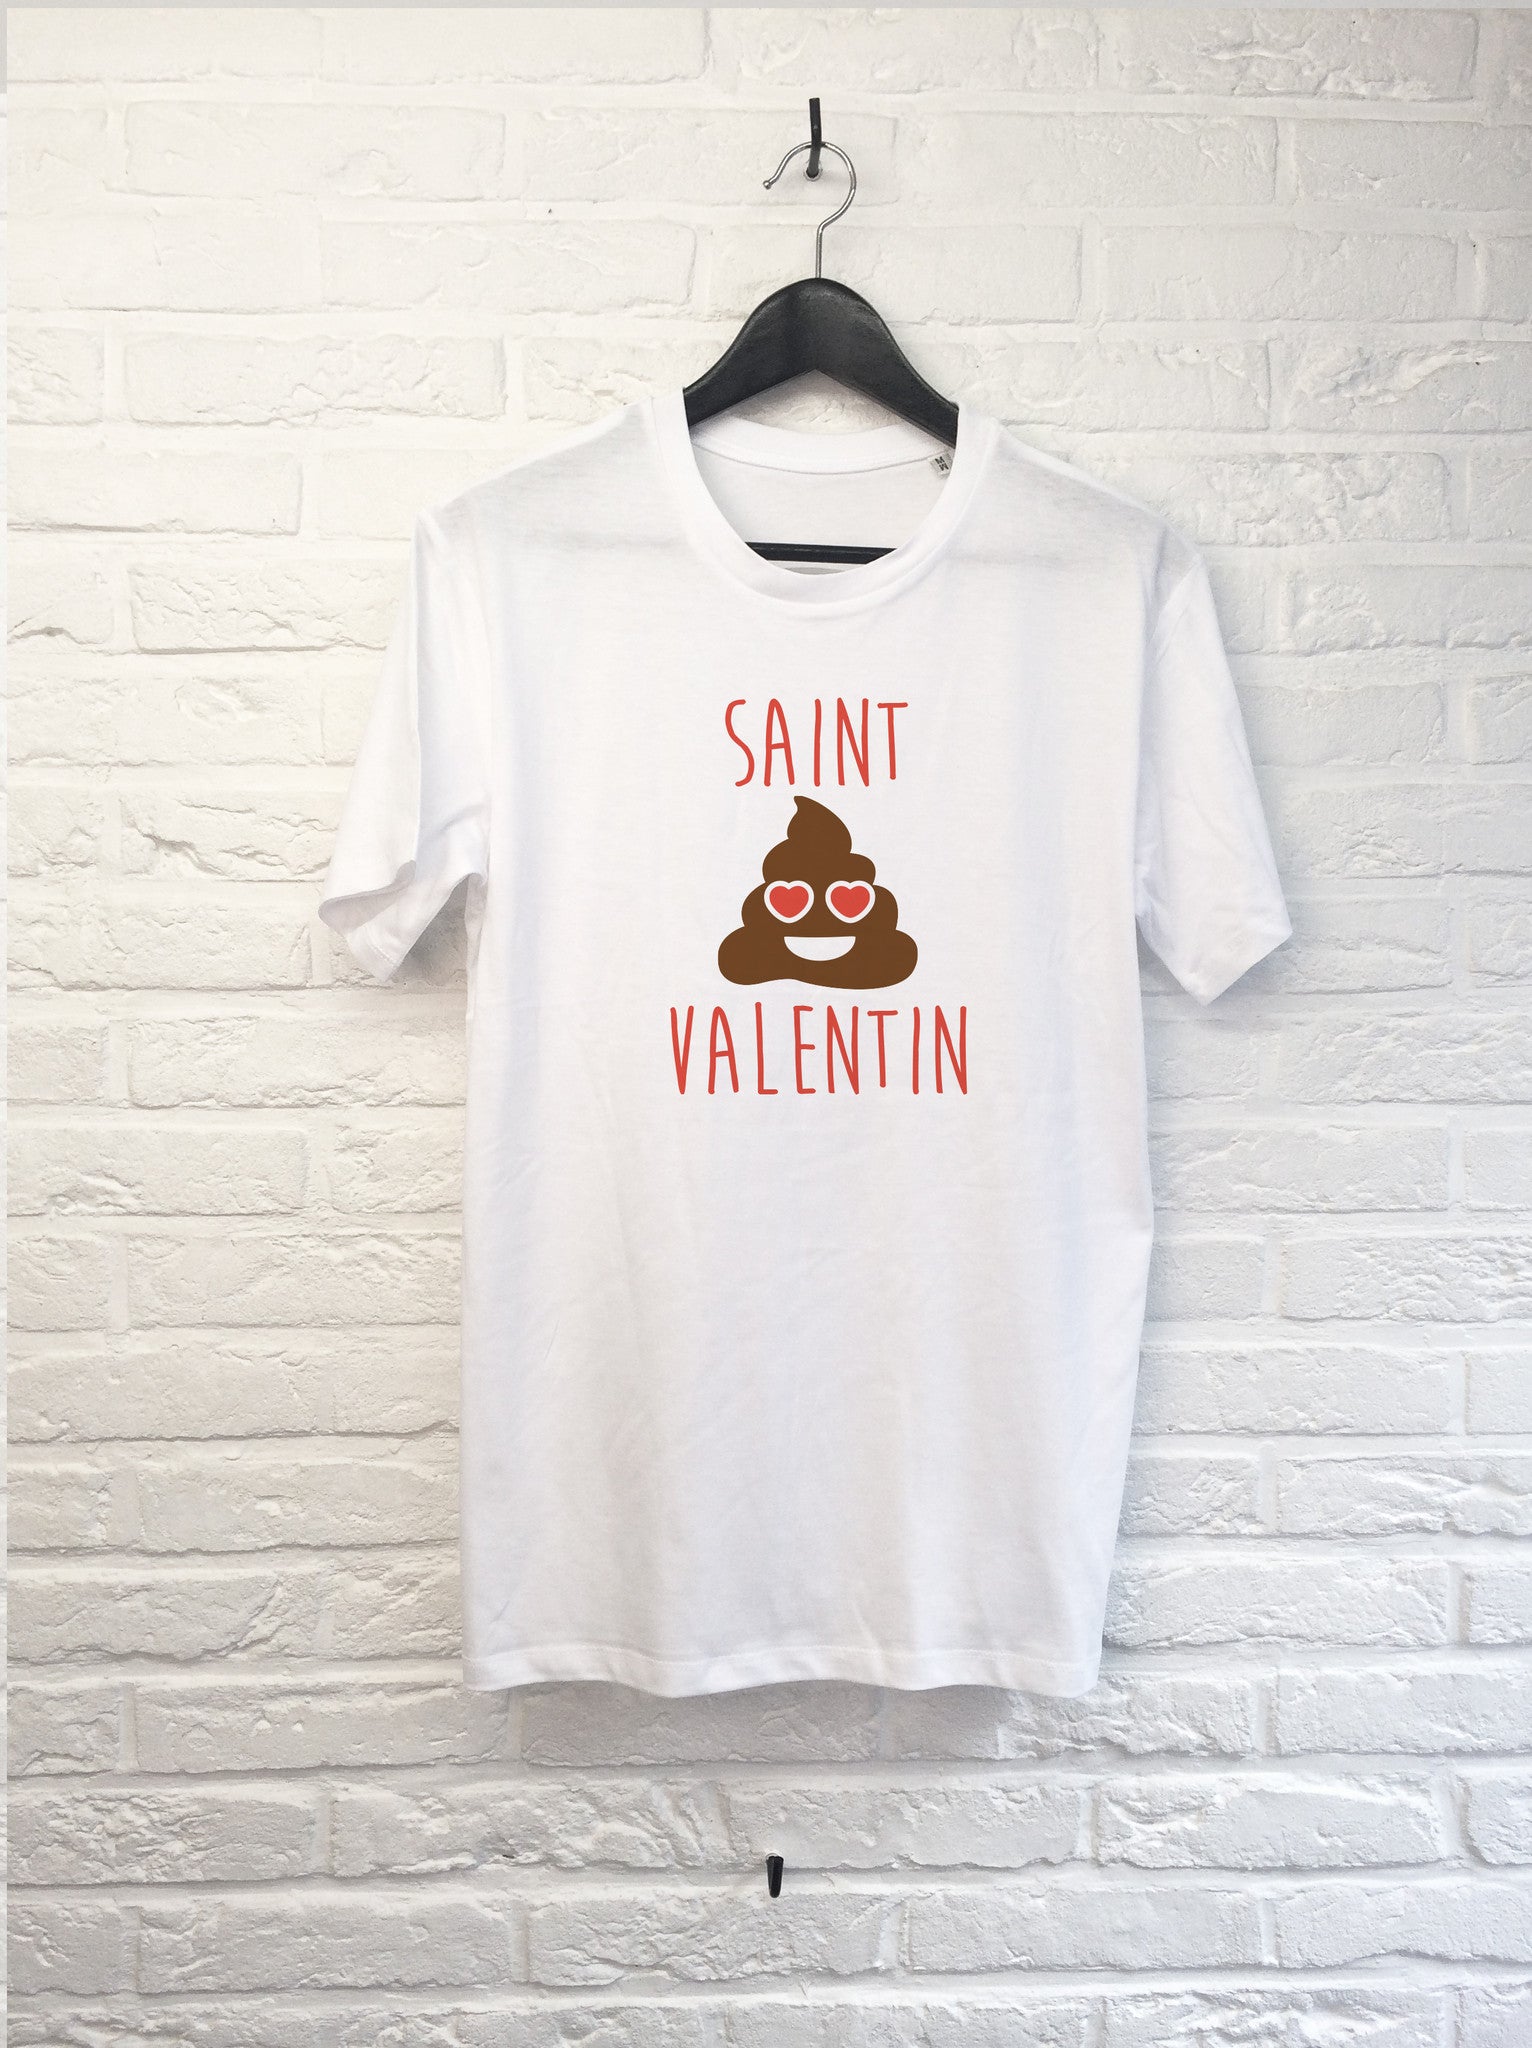 Saint Valentin-T shirt-Atelier Amelot